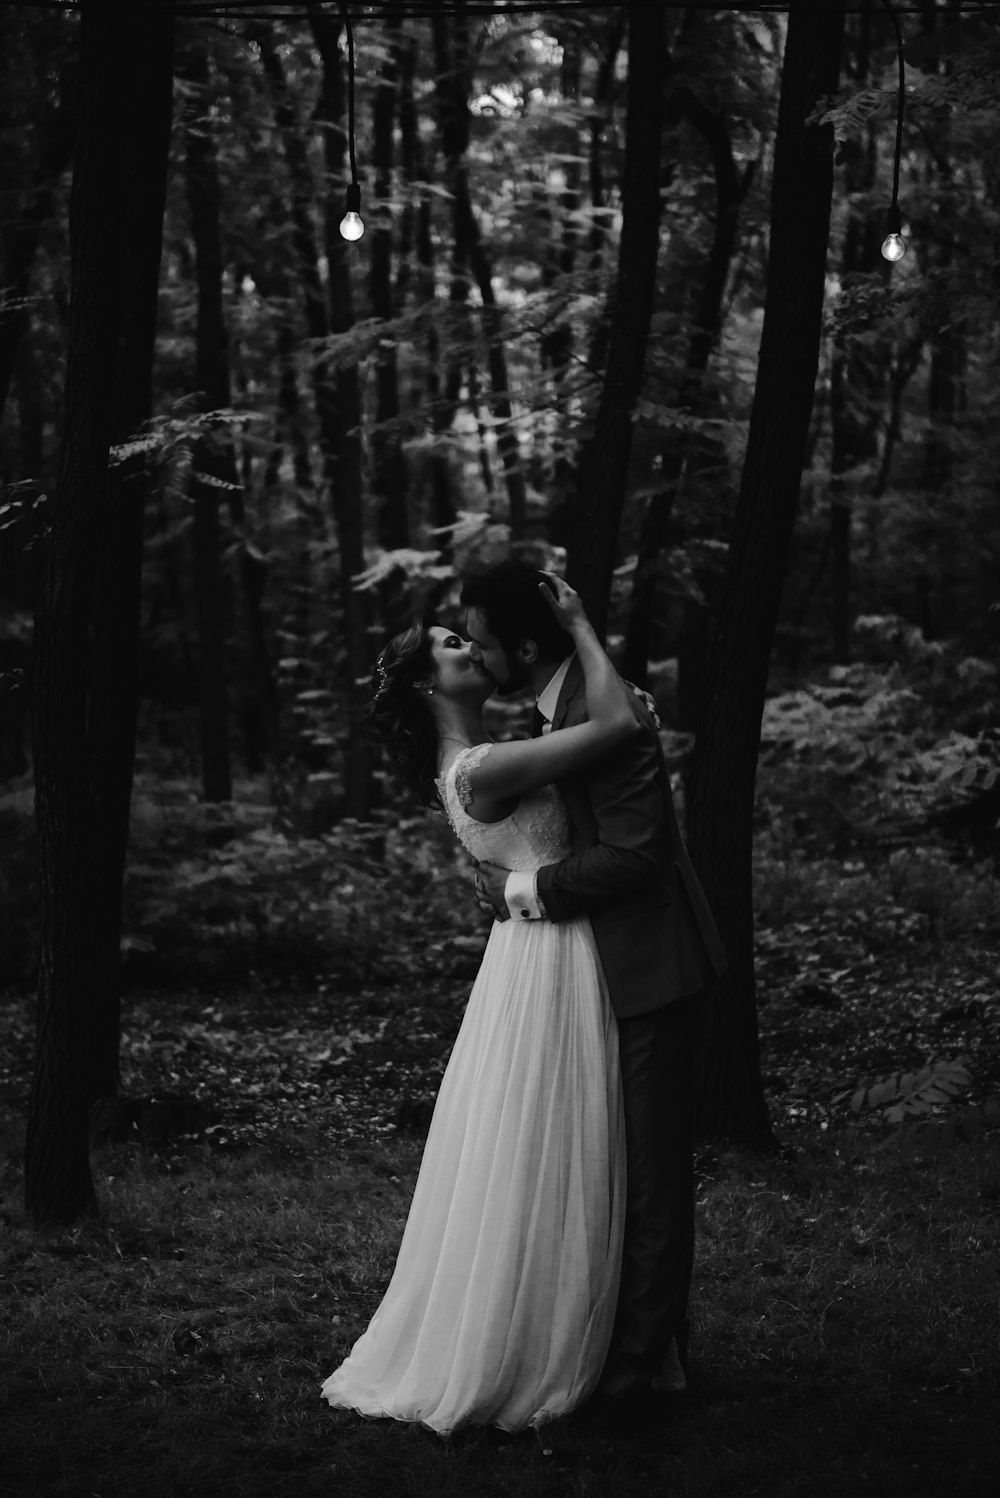 숲의 나무 아래에서 키스하는 커플의 회색조 사진